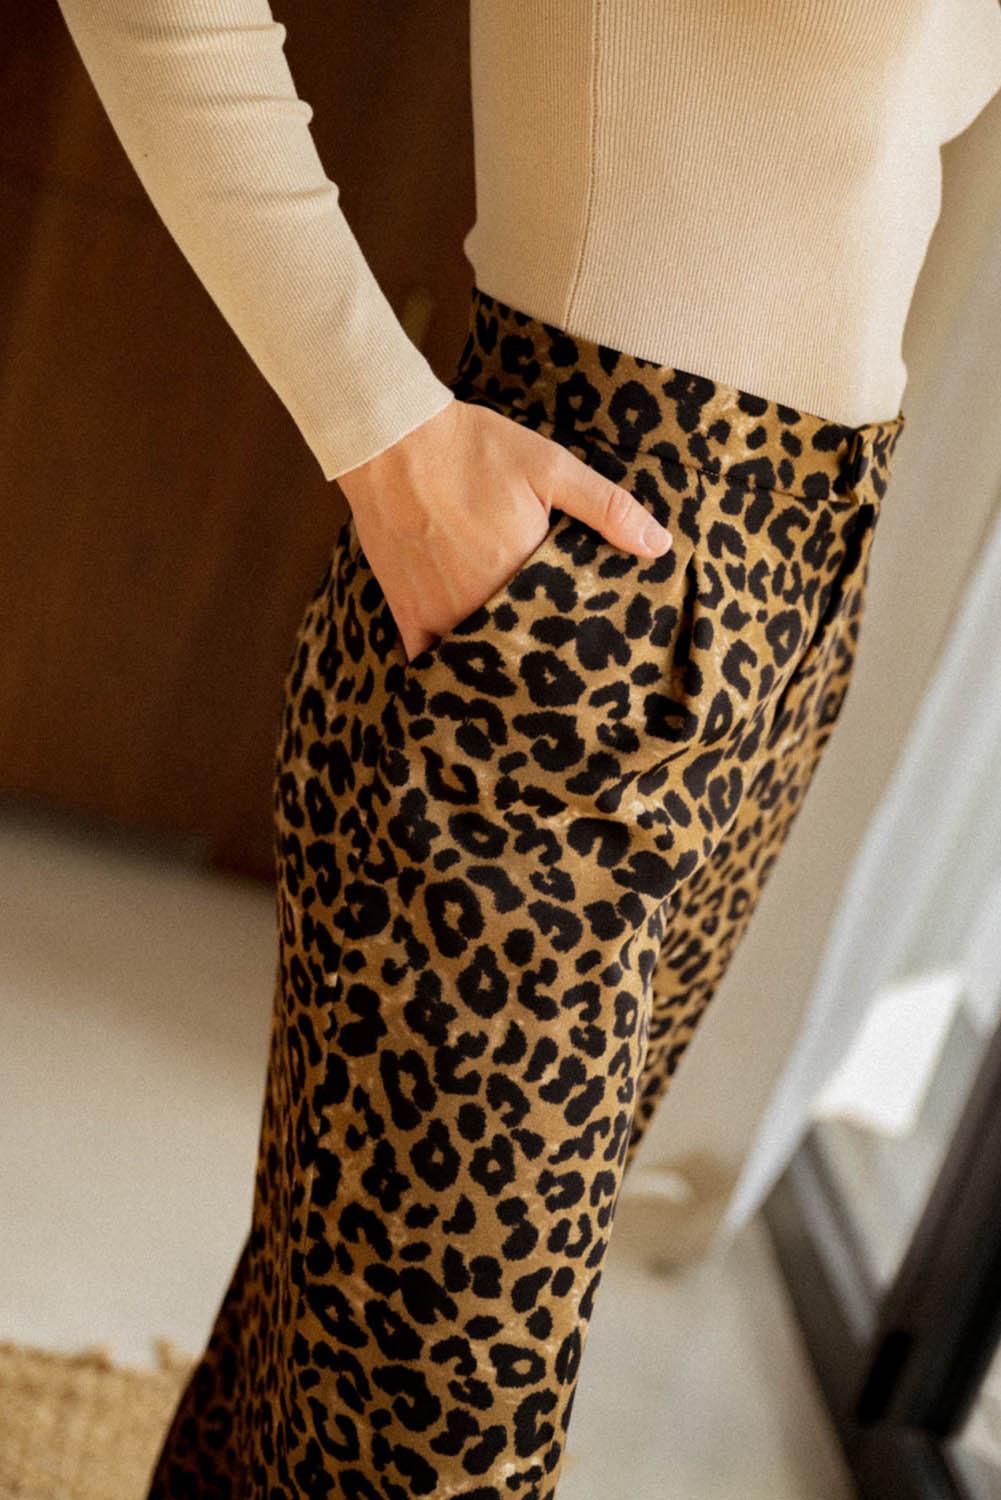 Leopard Animal Print Wide Leg Pants - L & M Kee, LLC